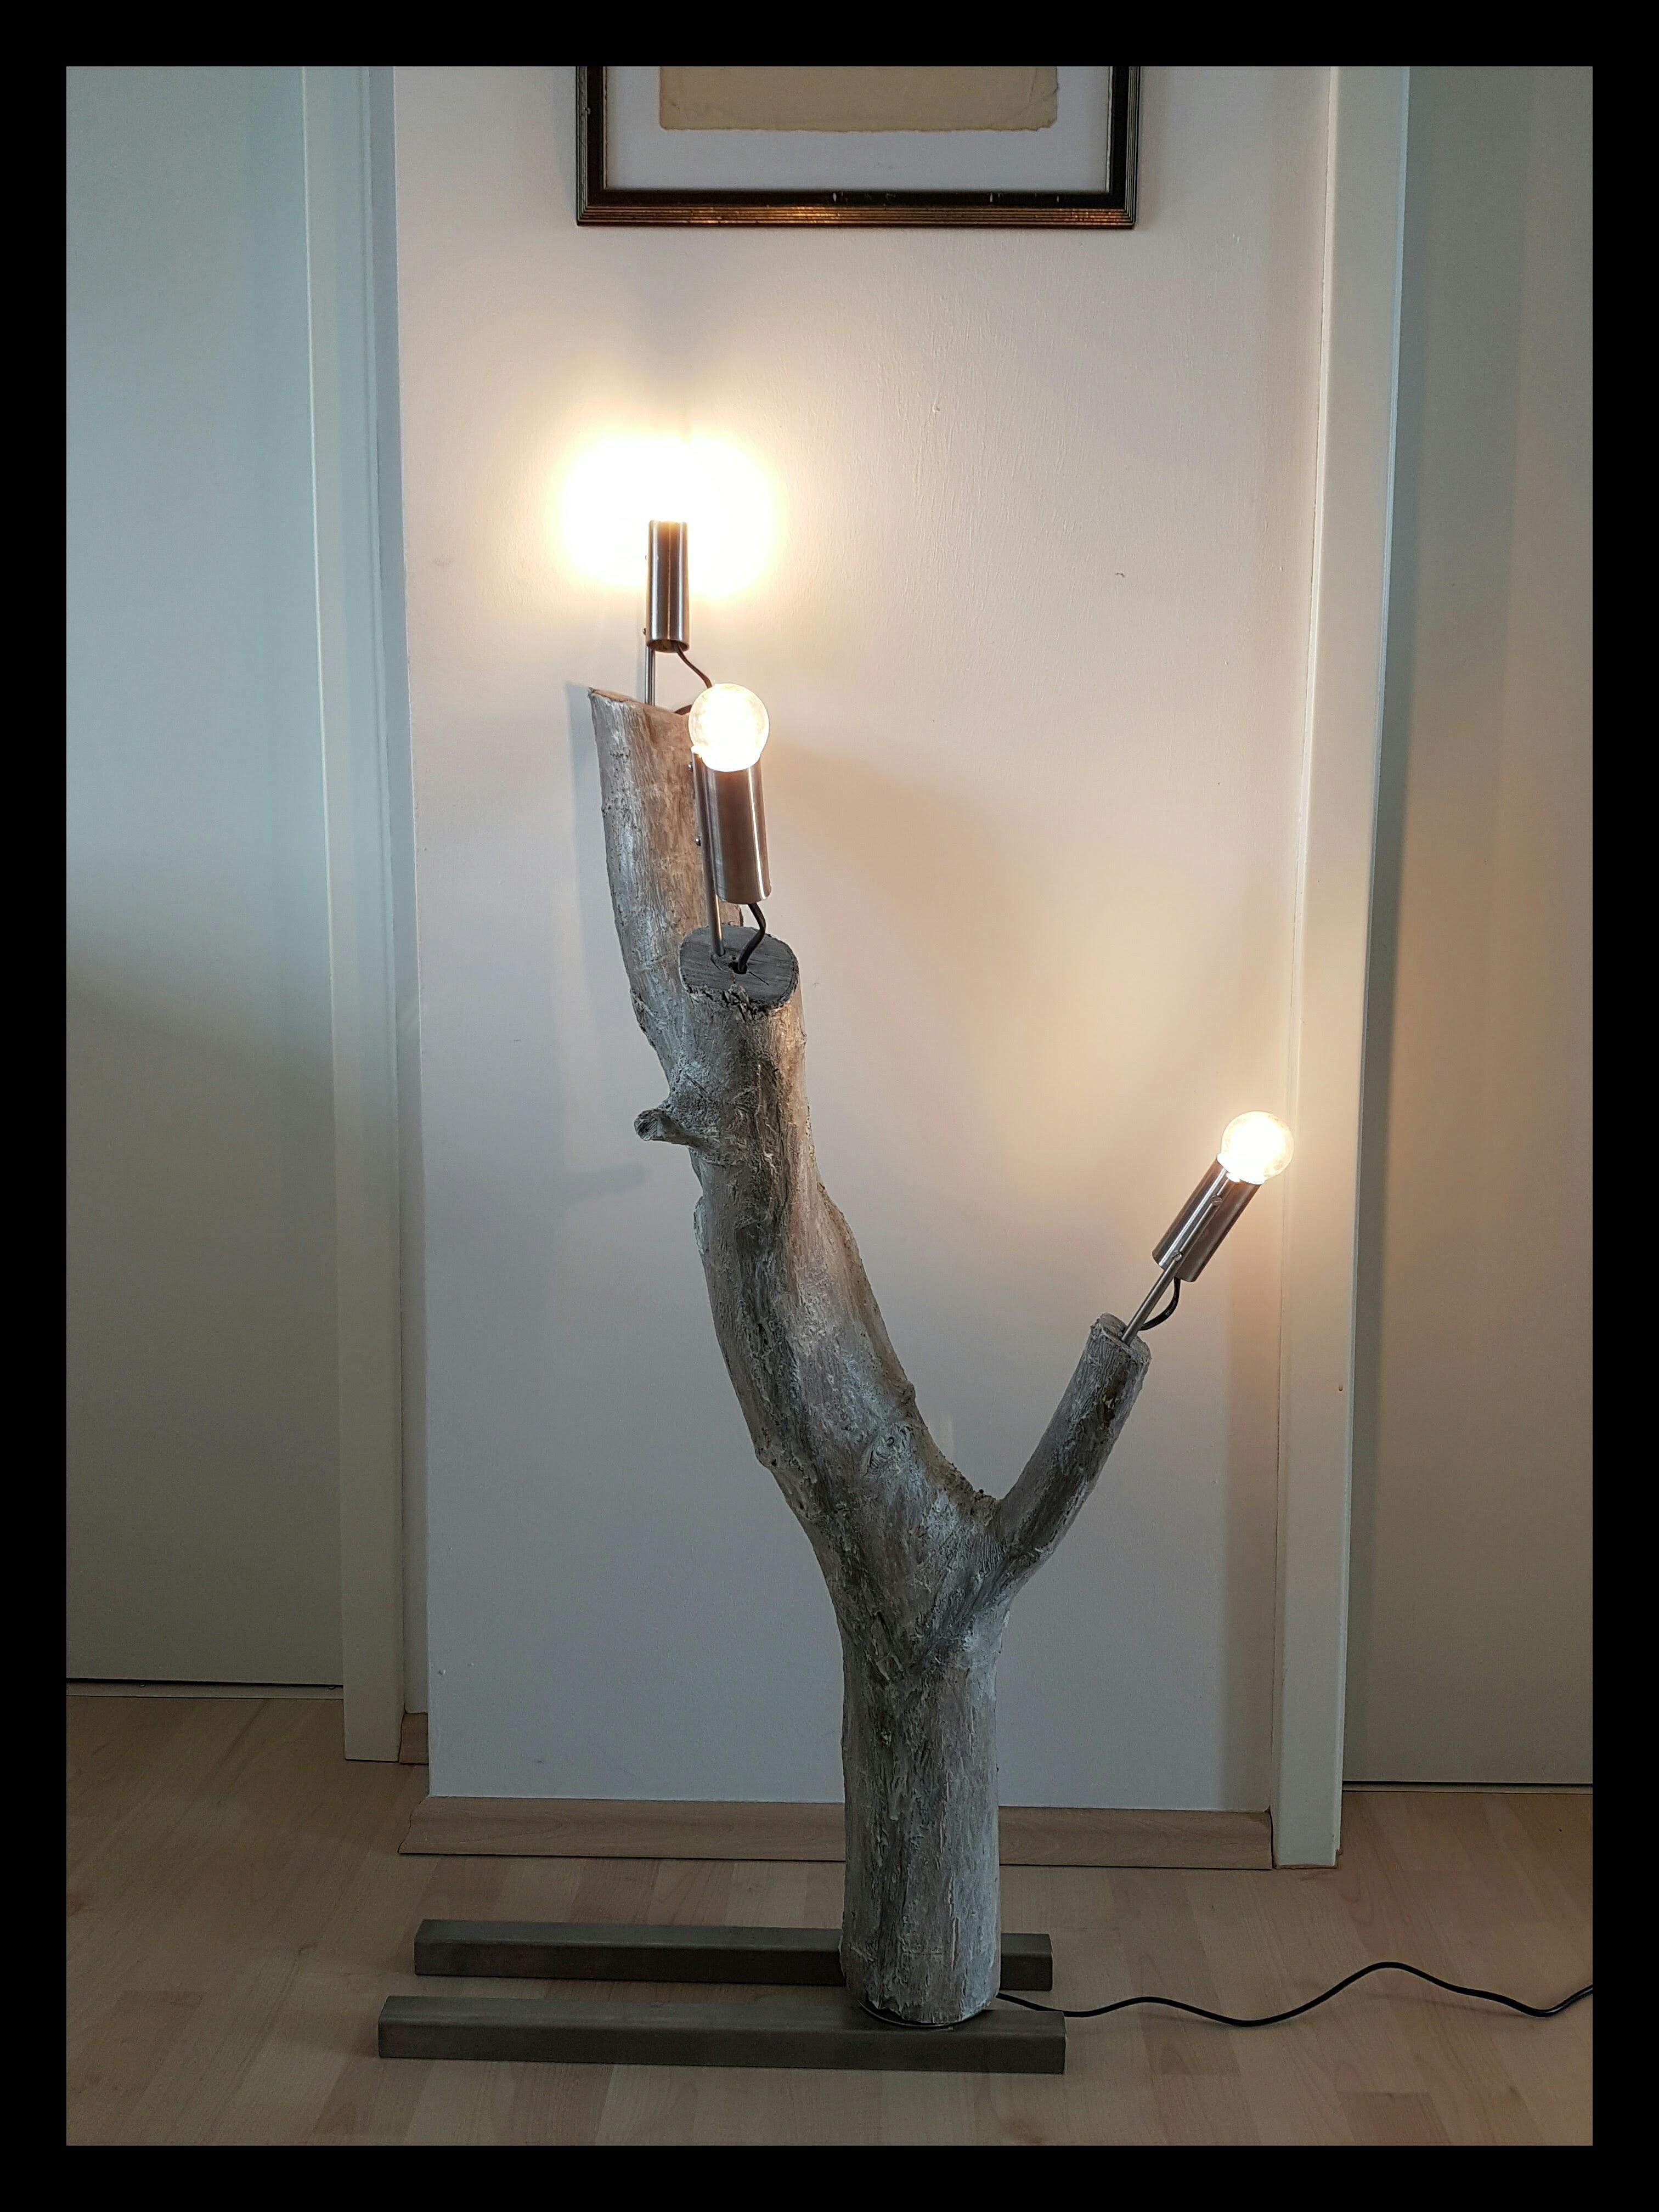 #lamp #art #livingroom #handmade